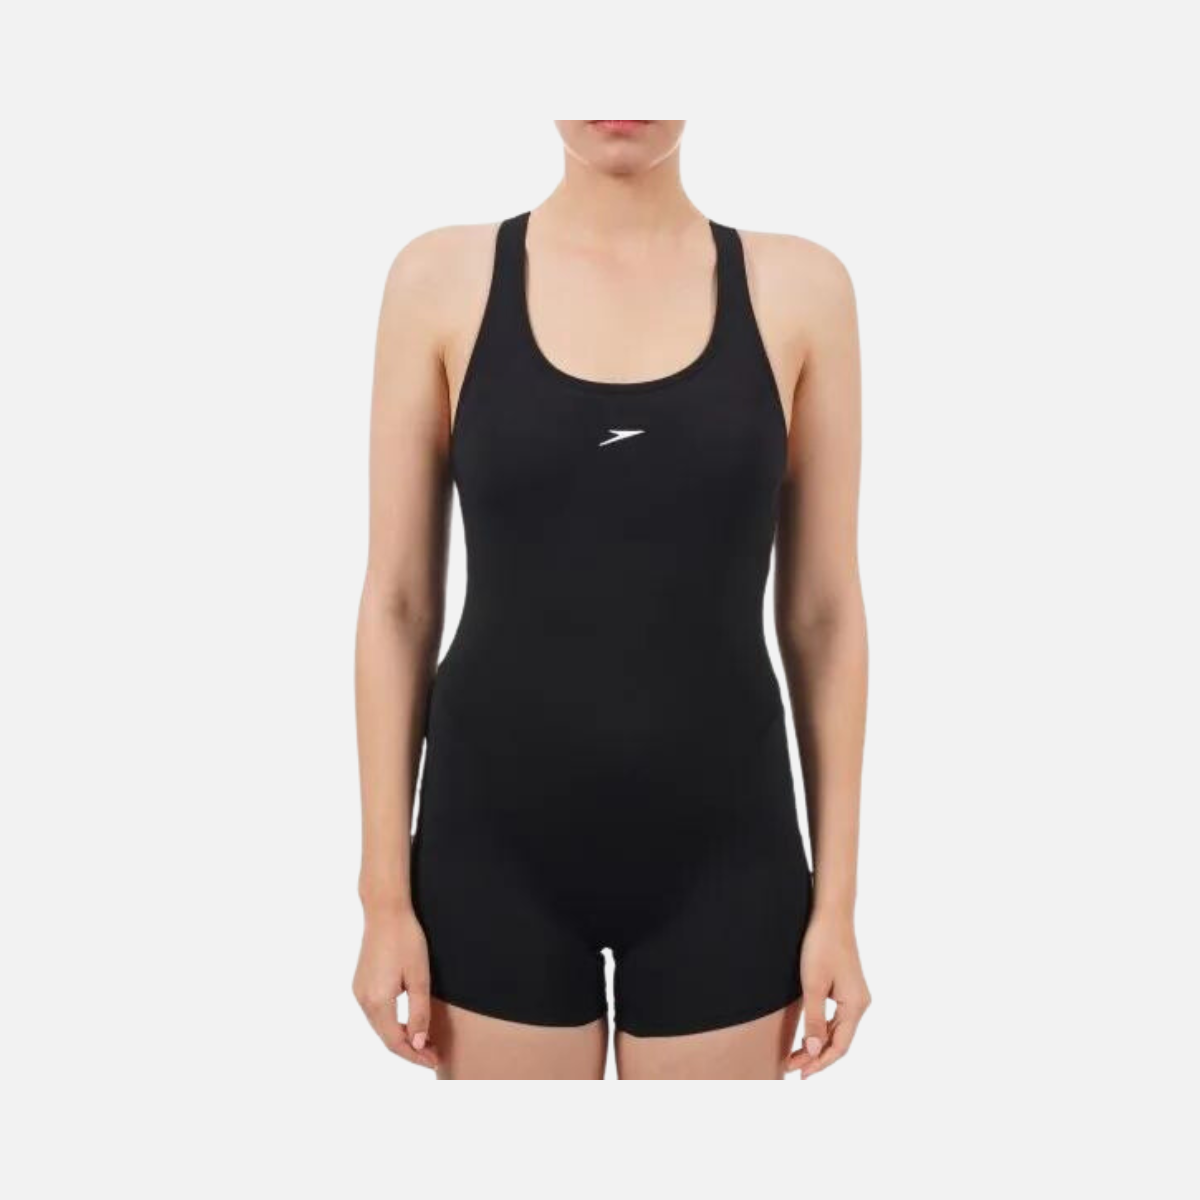 Speedo Myrtle Racerback Legsuit Women's Swimwear -Black/White